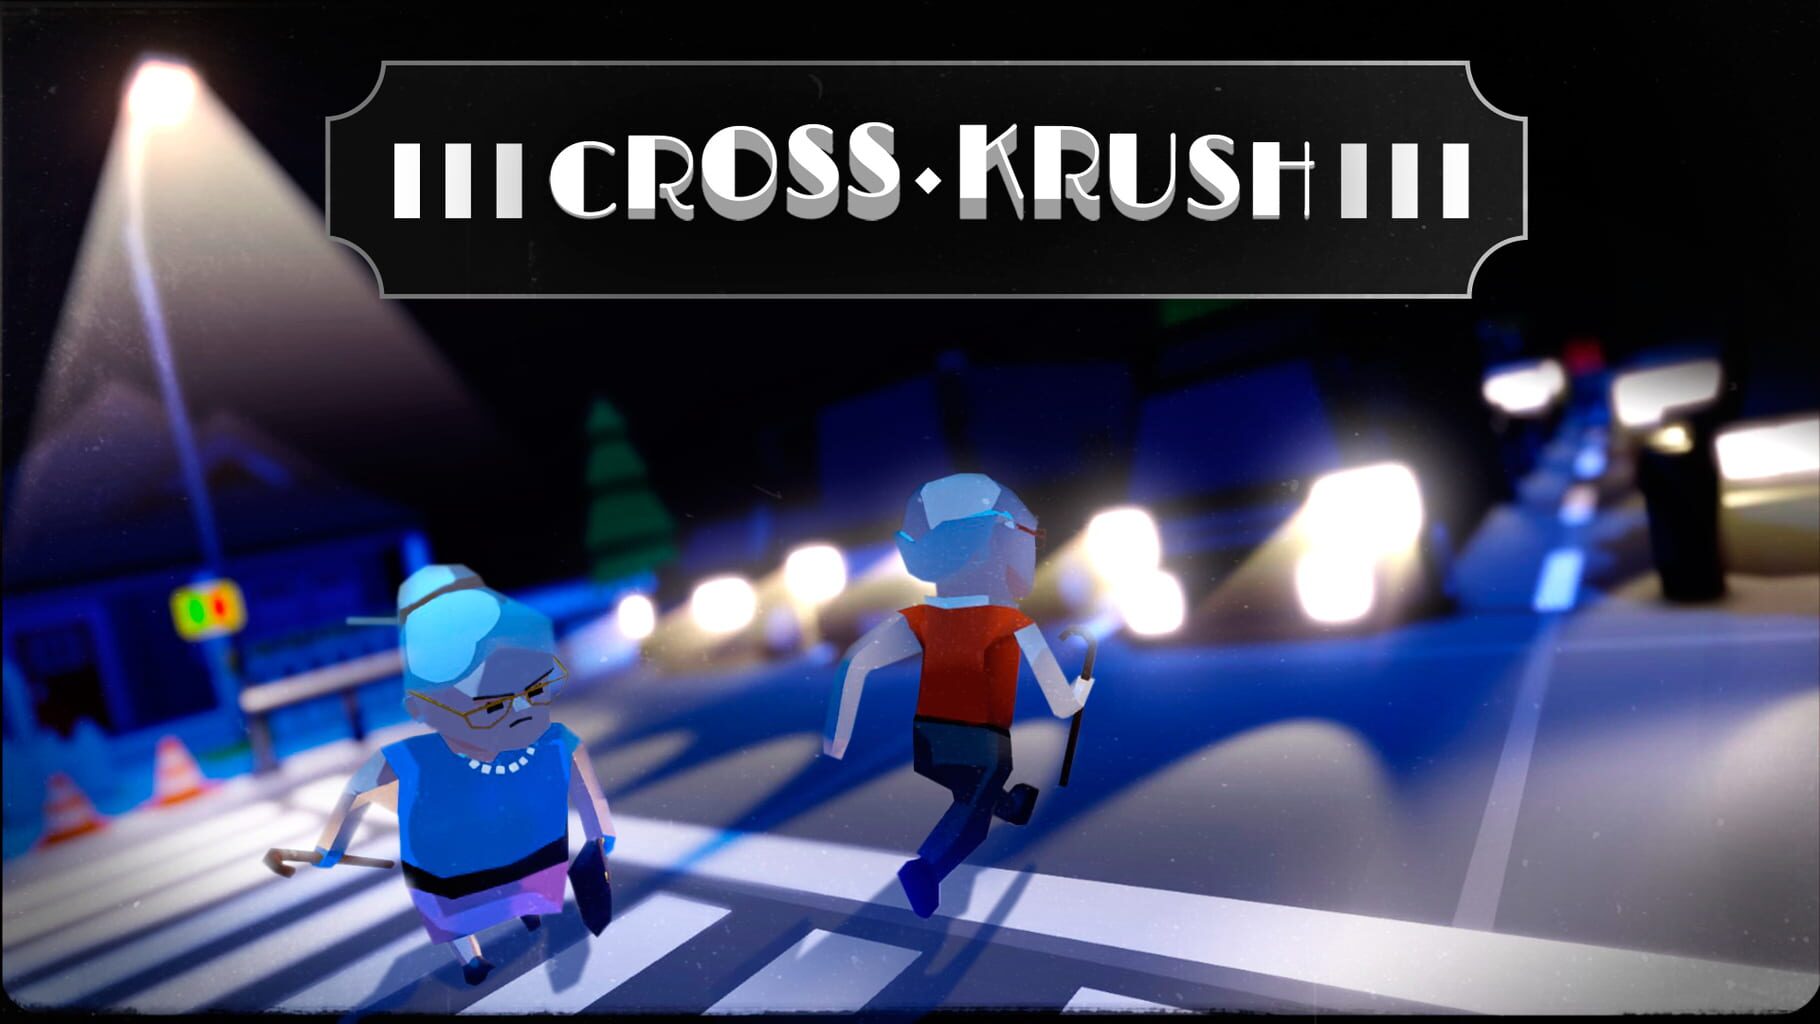 CrossKrush artwork